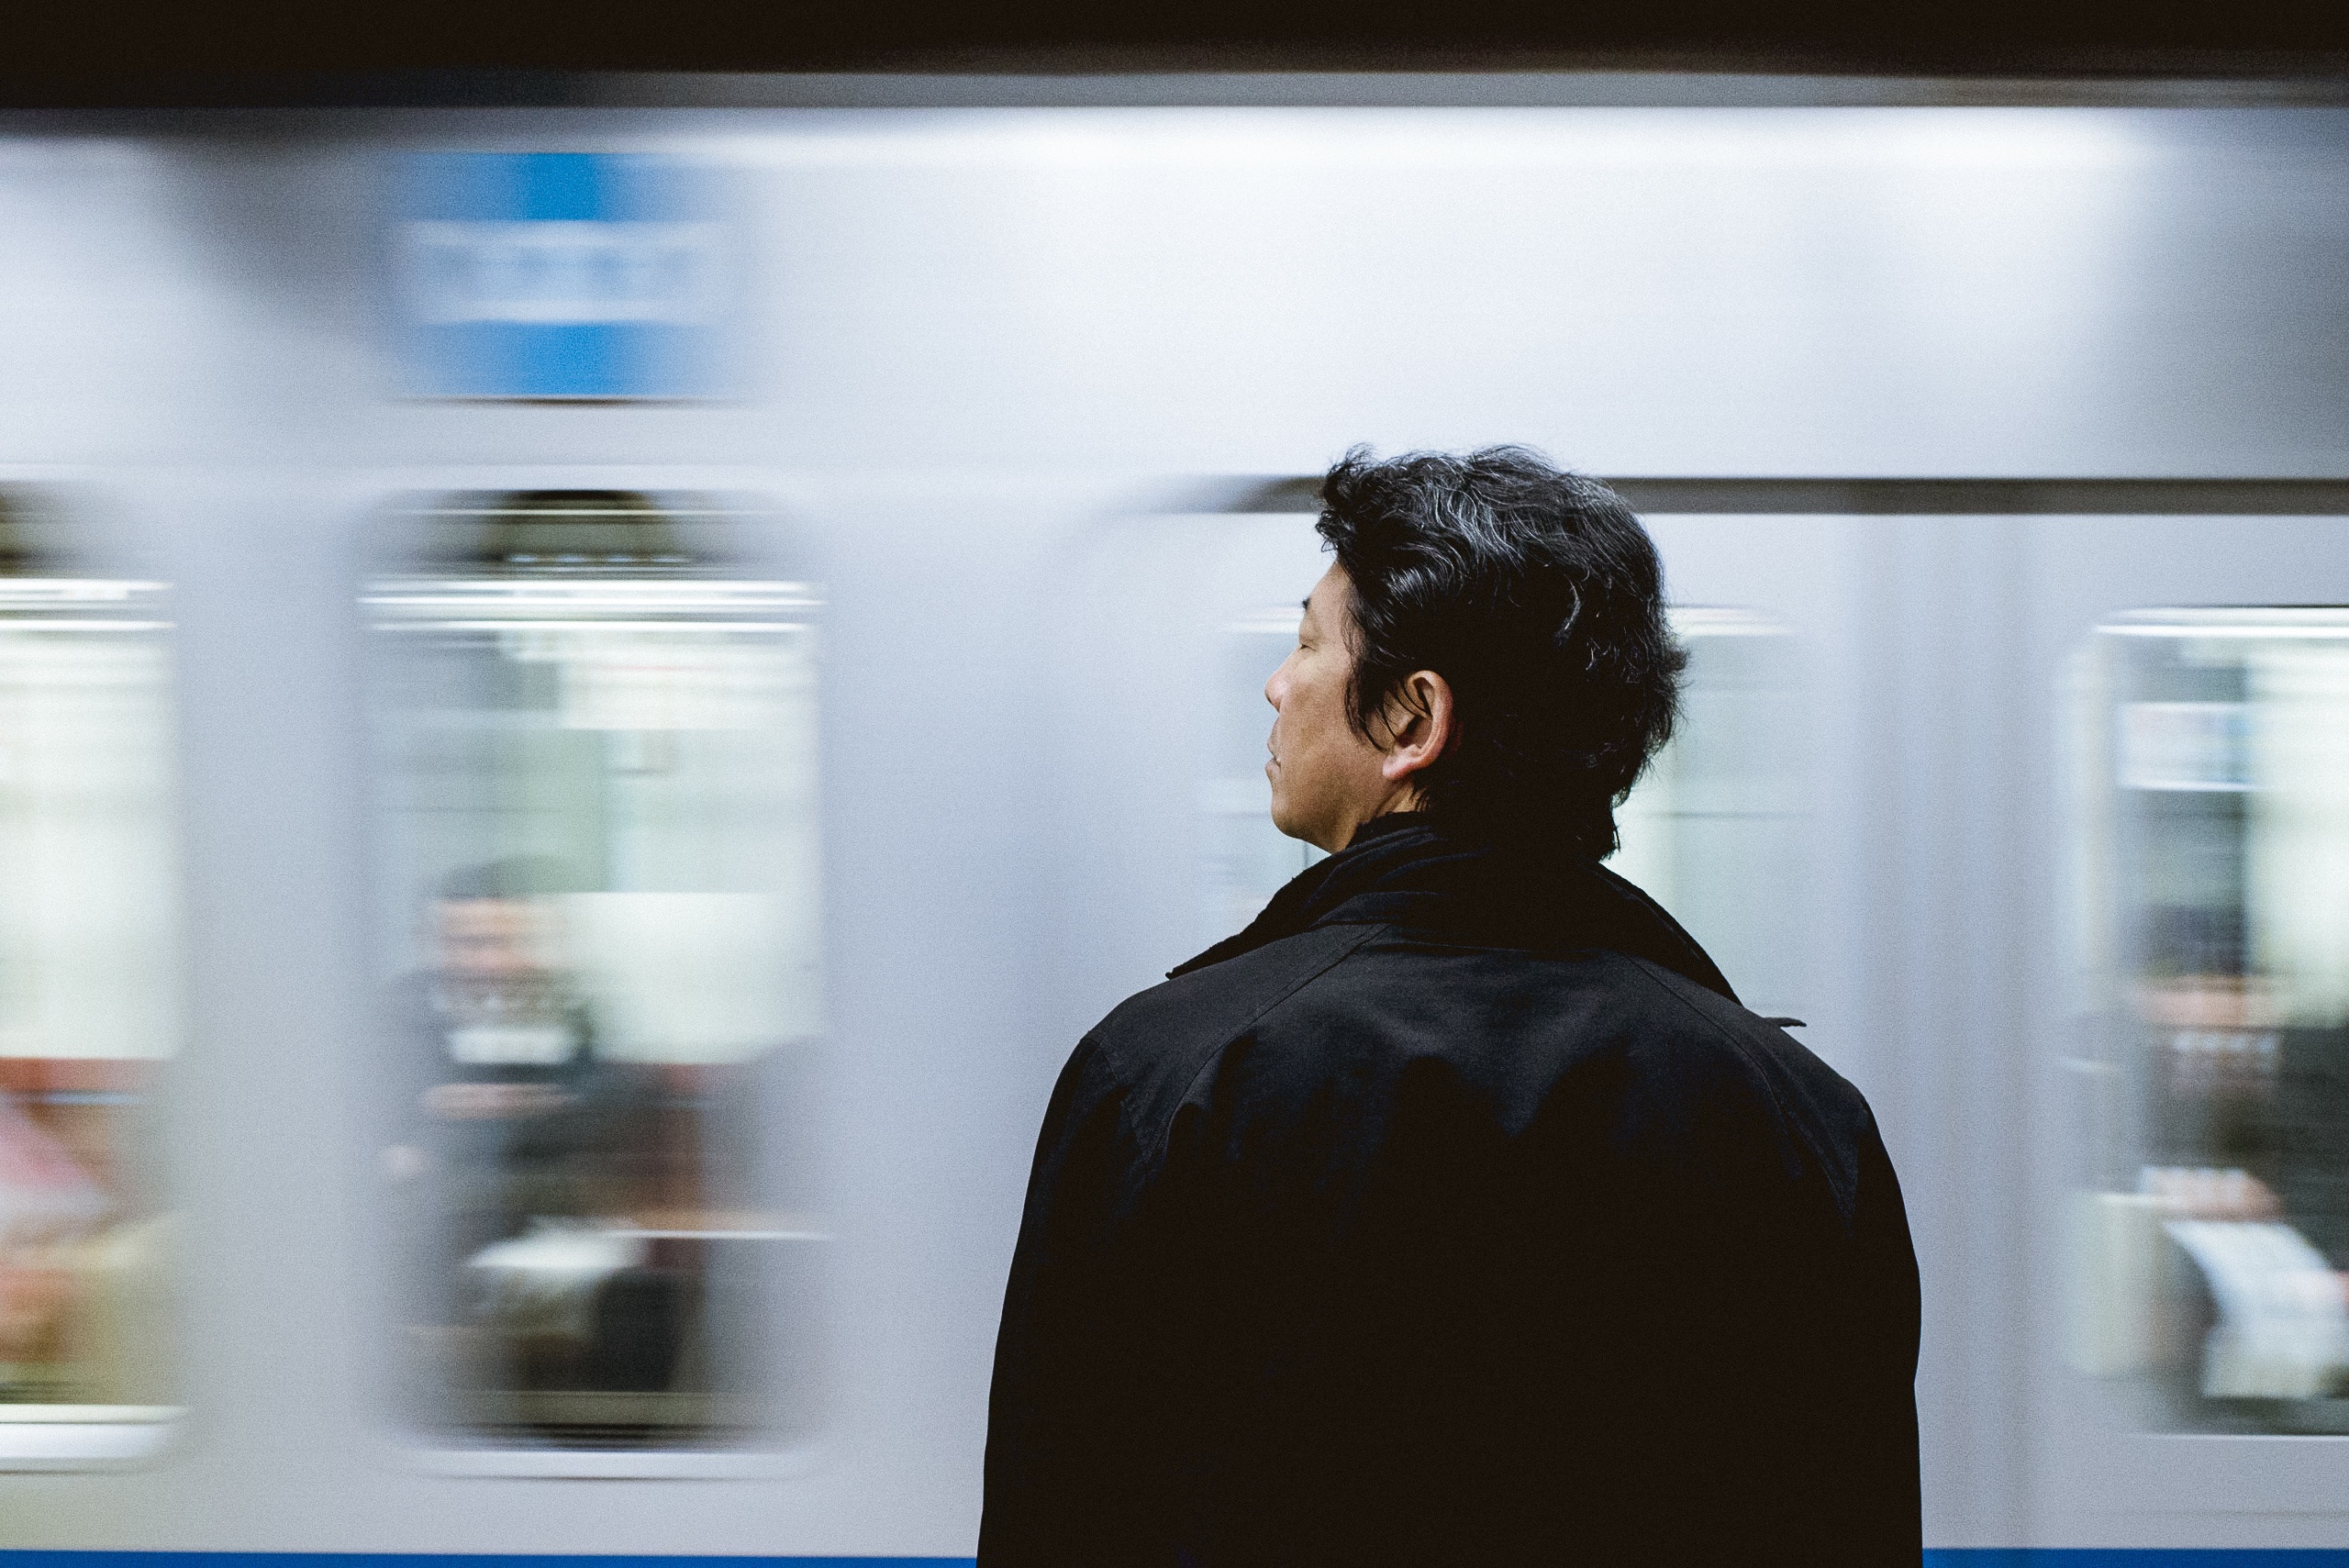 Фото мужчина, человек, технологии, стекло, поезд, метро, общение, профессиональный, электронное устройство, hi-tech - бесплатные картинки на Fonwall